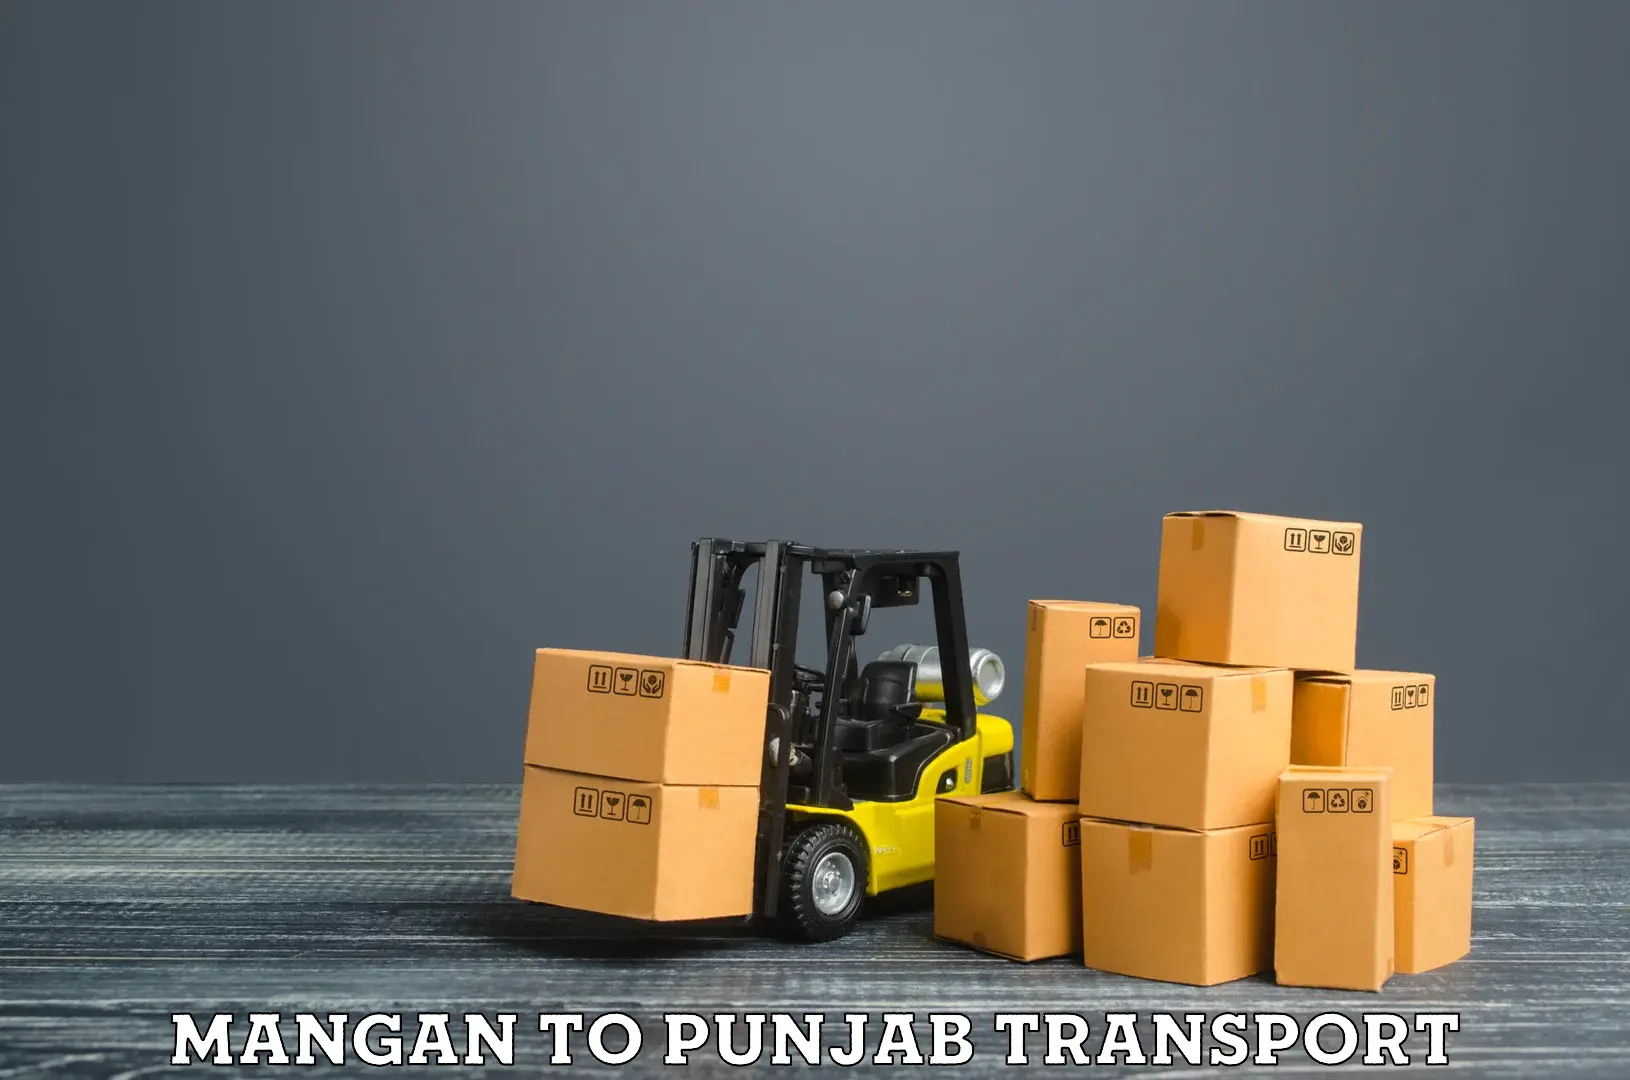 Land transport services Mangan to Abohar